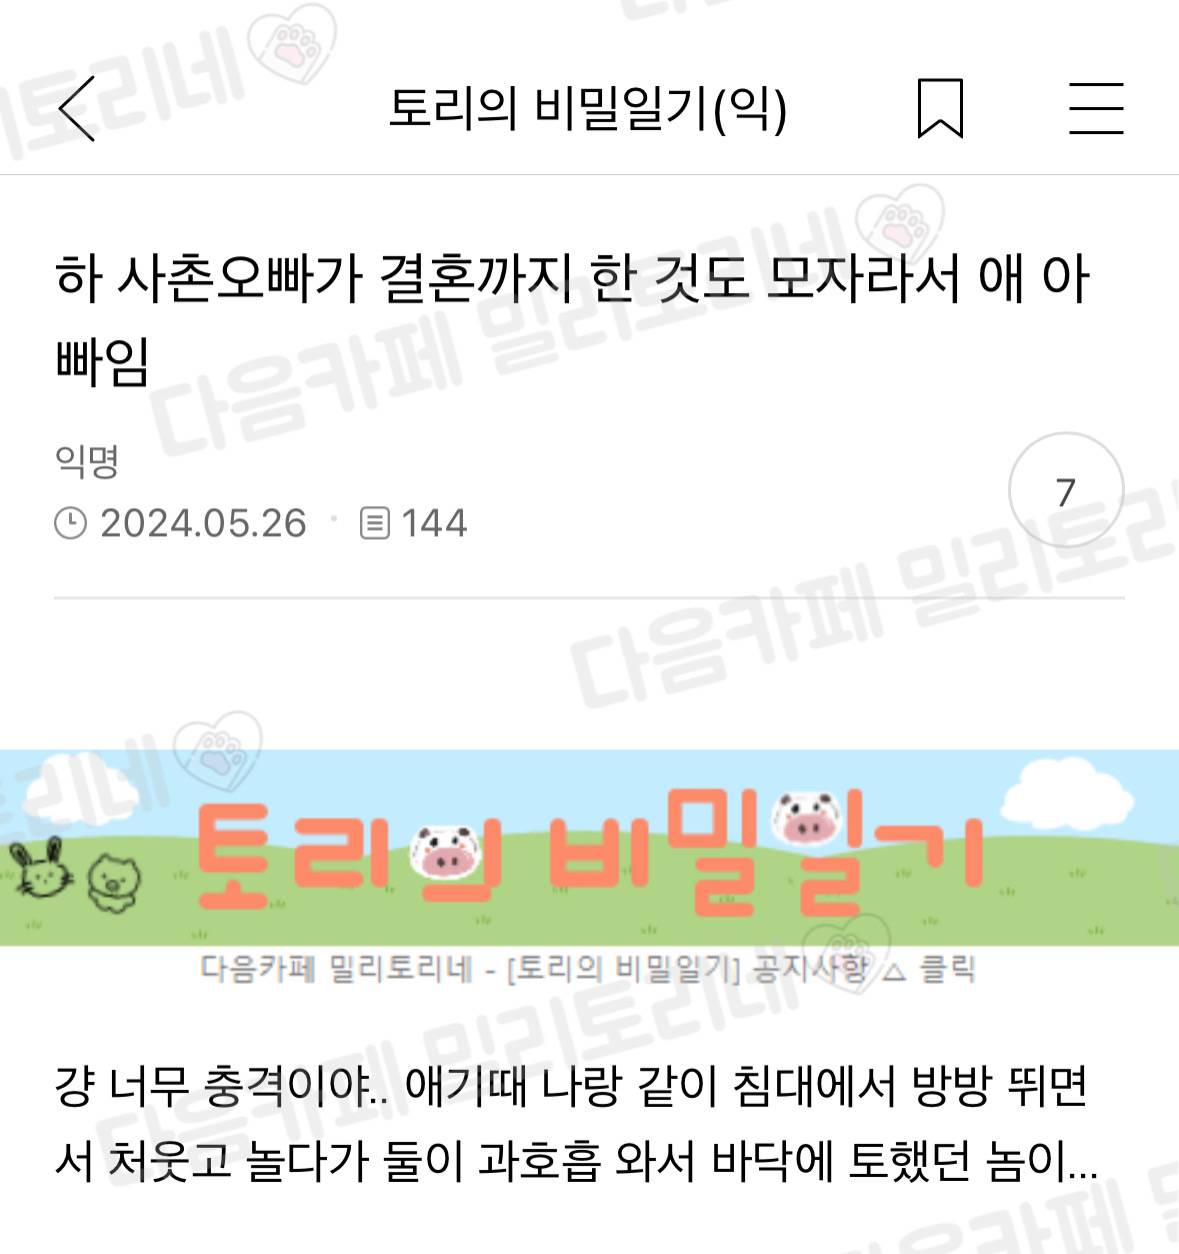 nokbeon.net-하 사촌오빠가 결혼까지 한 것도 모자라서 애 아빠임-1번 이미지